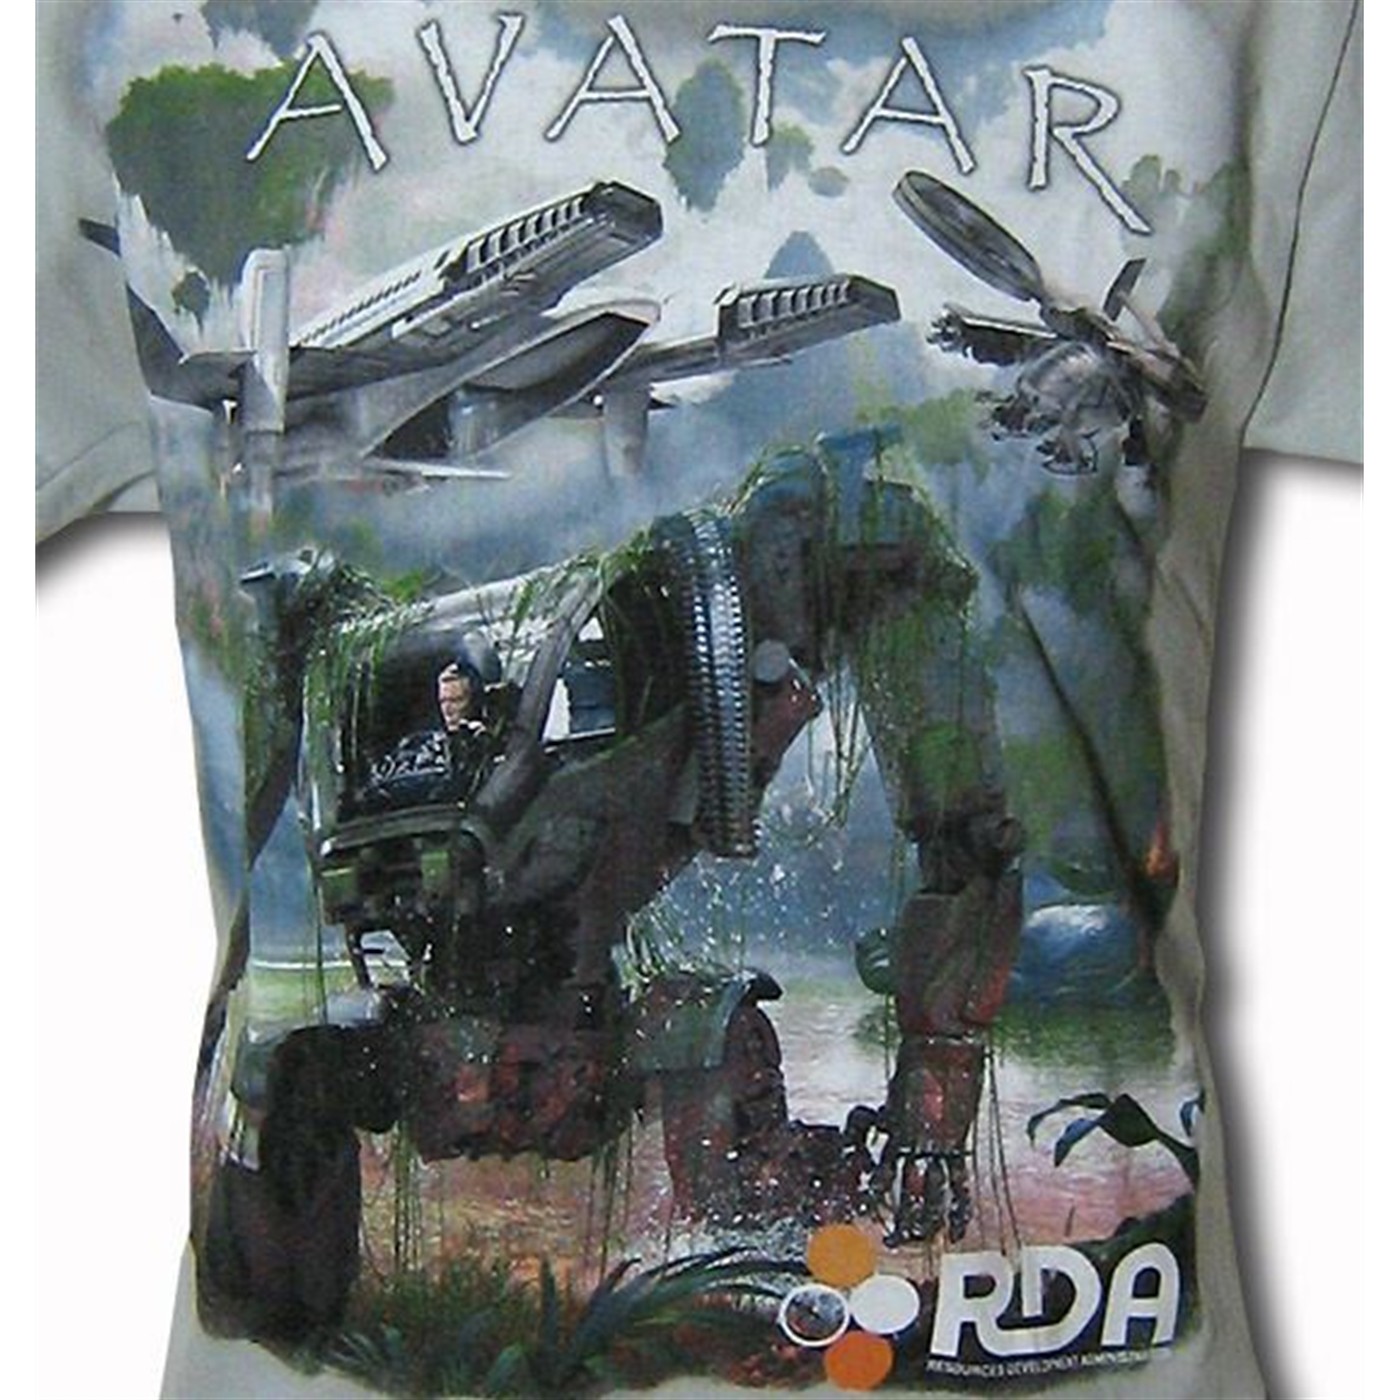 Avatar Machine Monster Youth T-Shirt